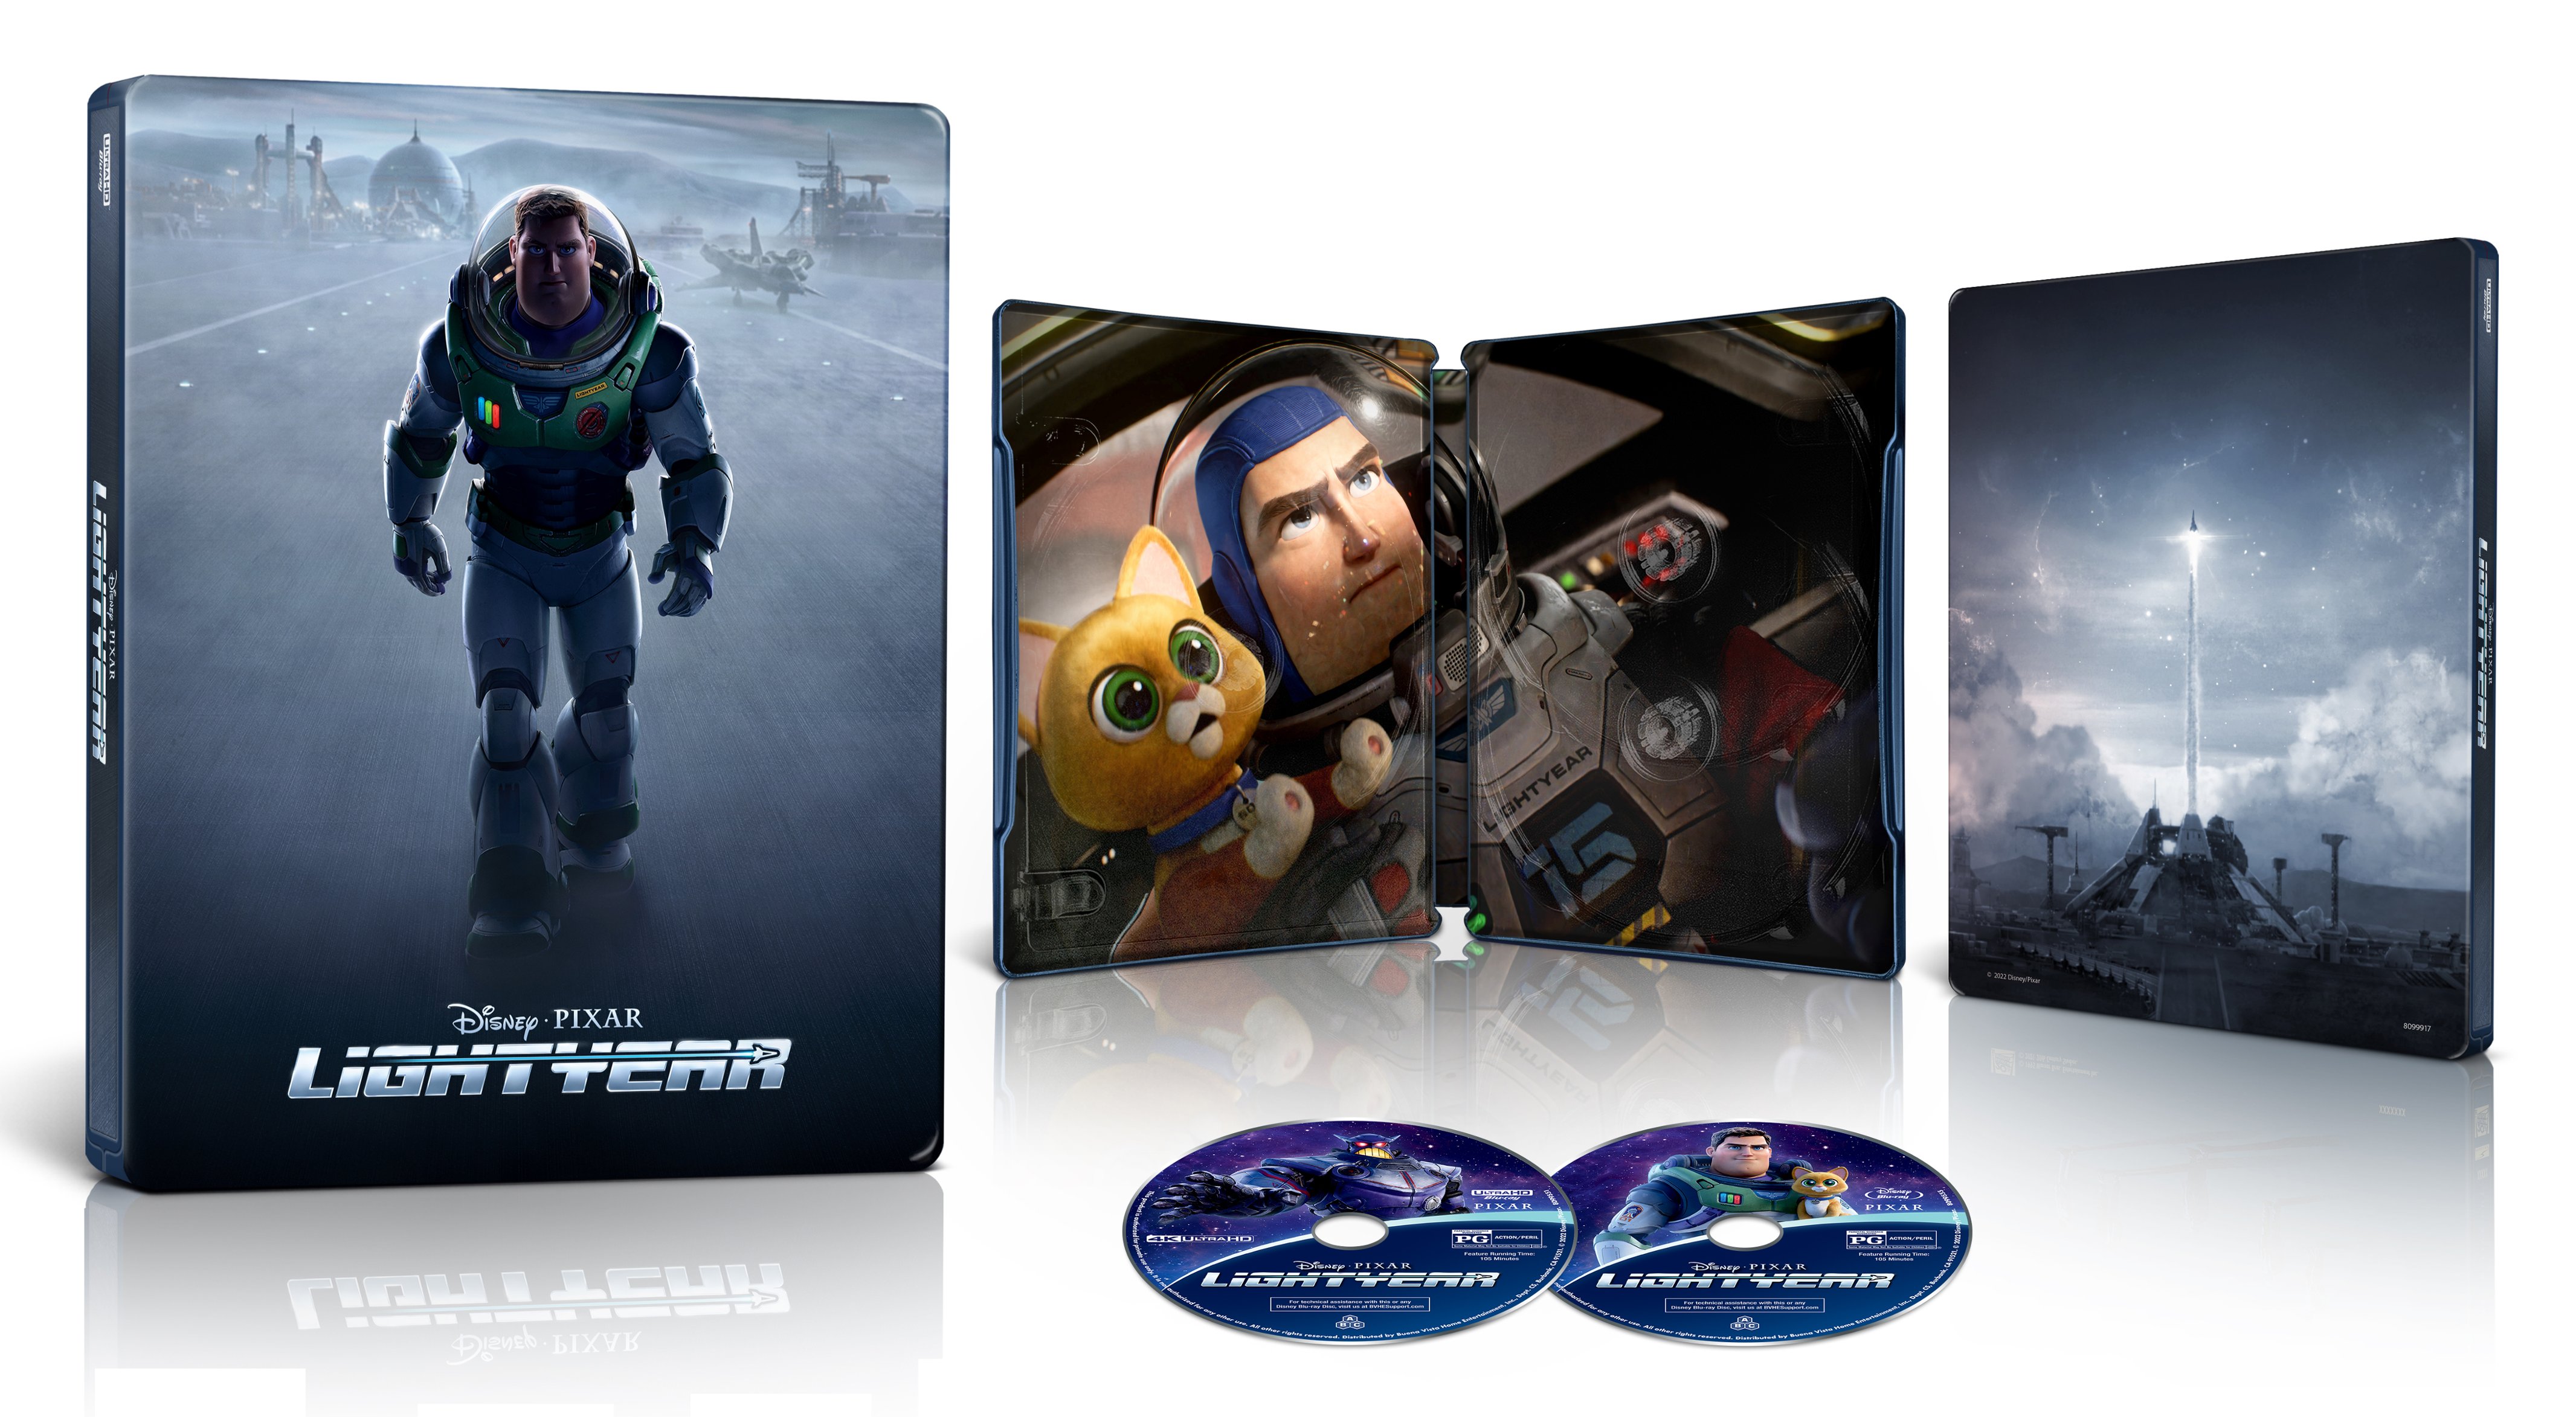 Lightyear Steelbook Includes Digital Copy 4k Ultra Hd Blu Ray Blu Ray Only Best Buy 22 Best Buy